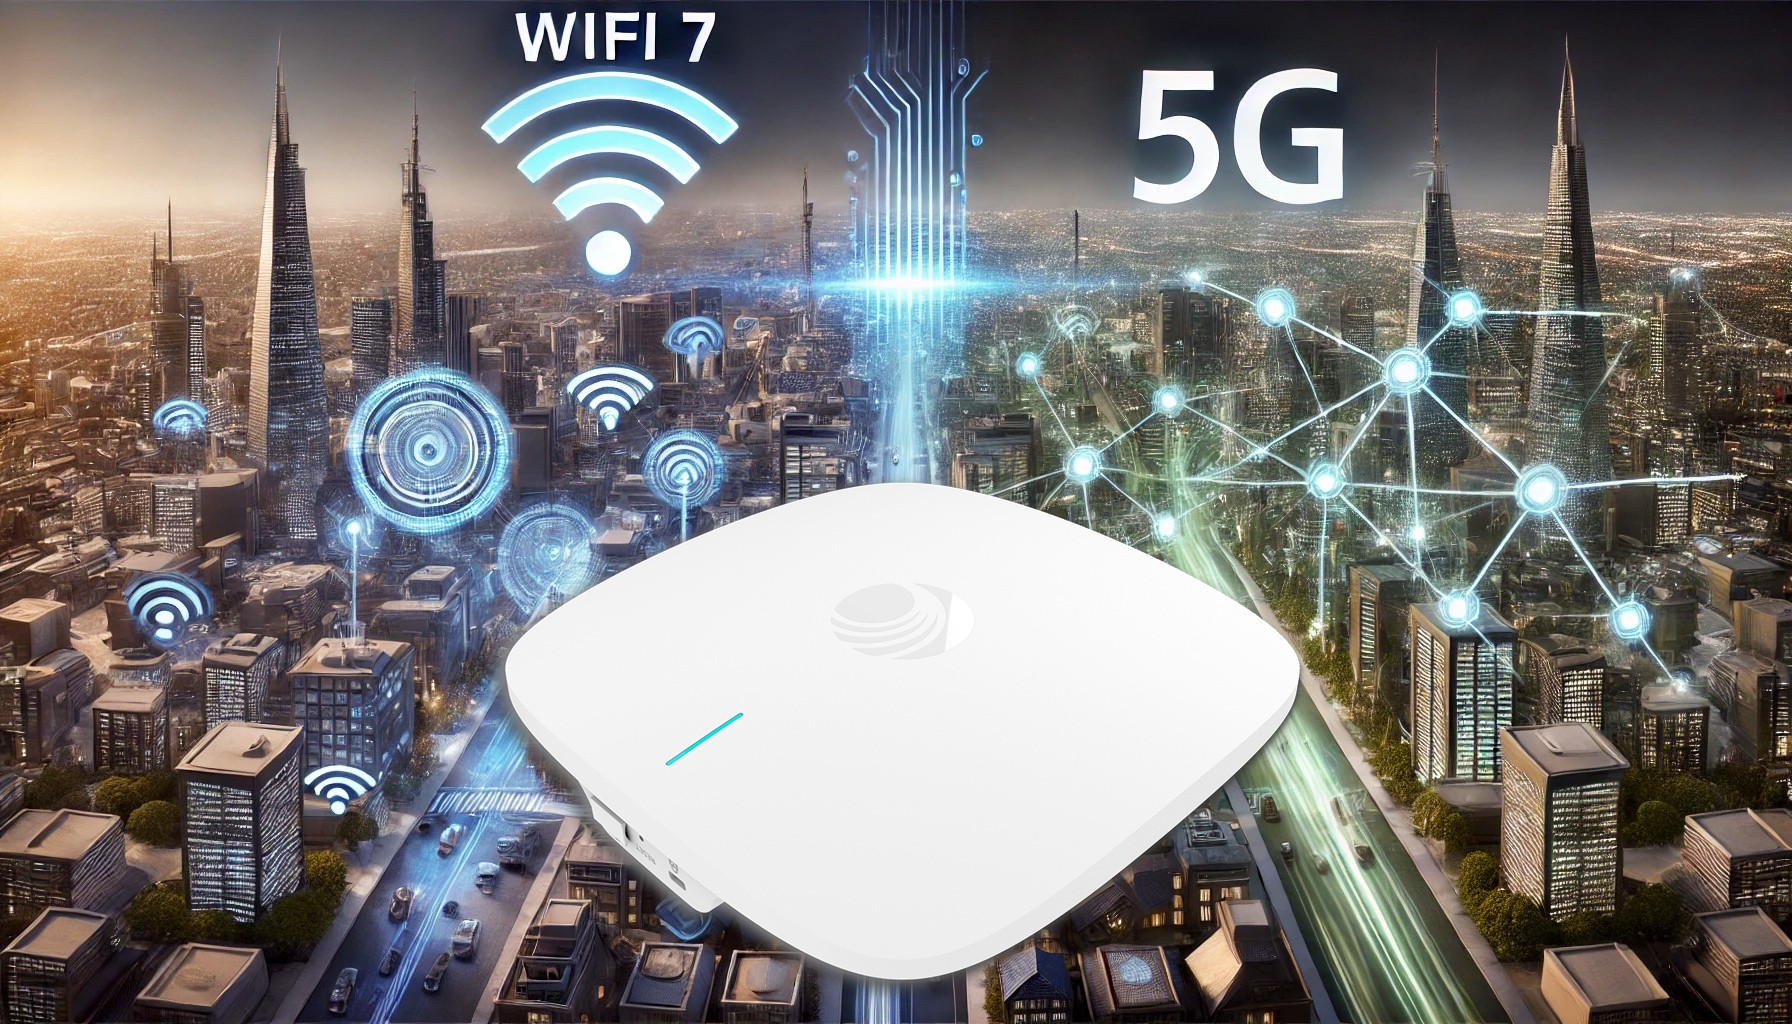  WiFi 7 ofrece lo que el 5G prometió y nunca dio 